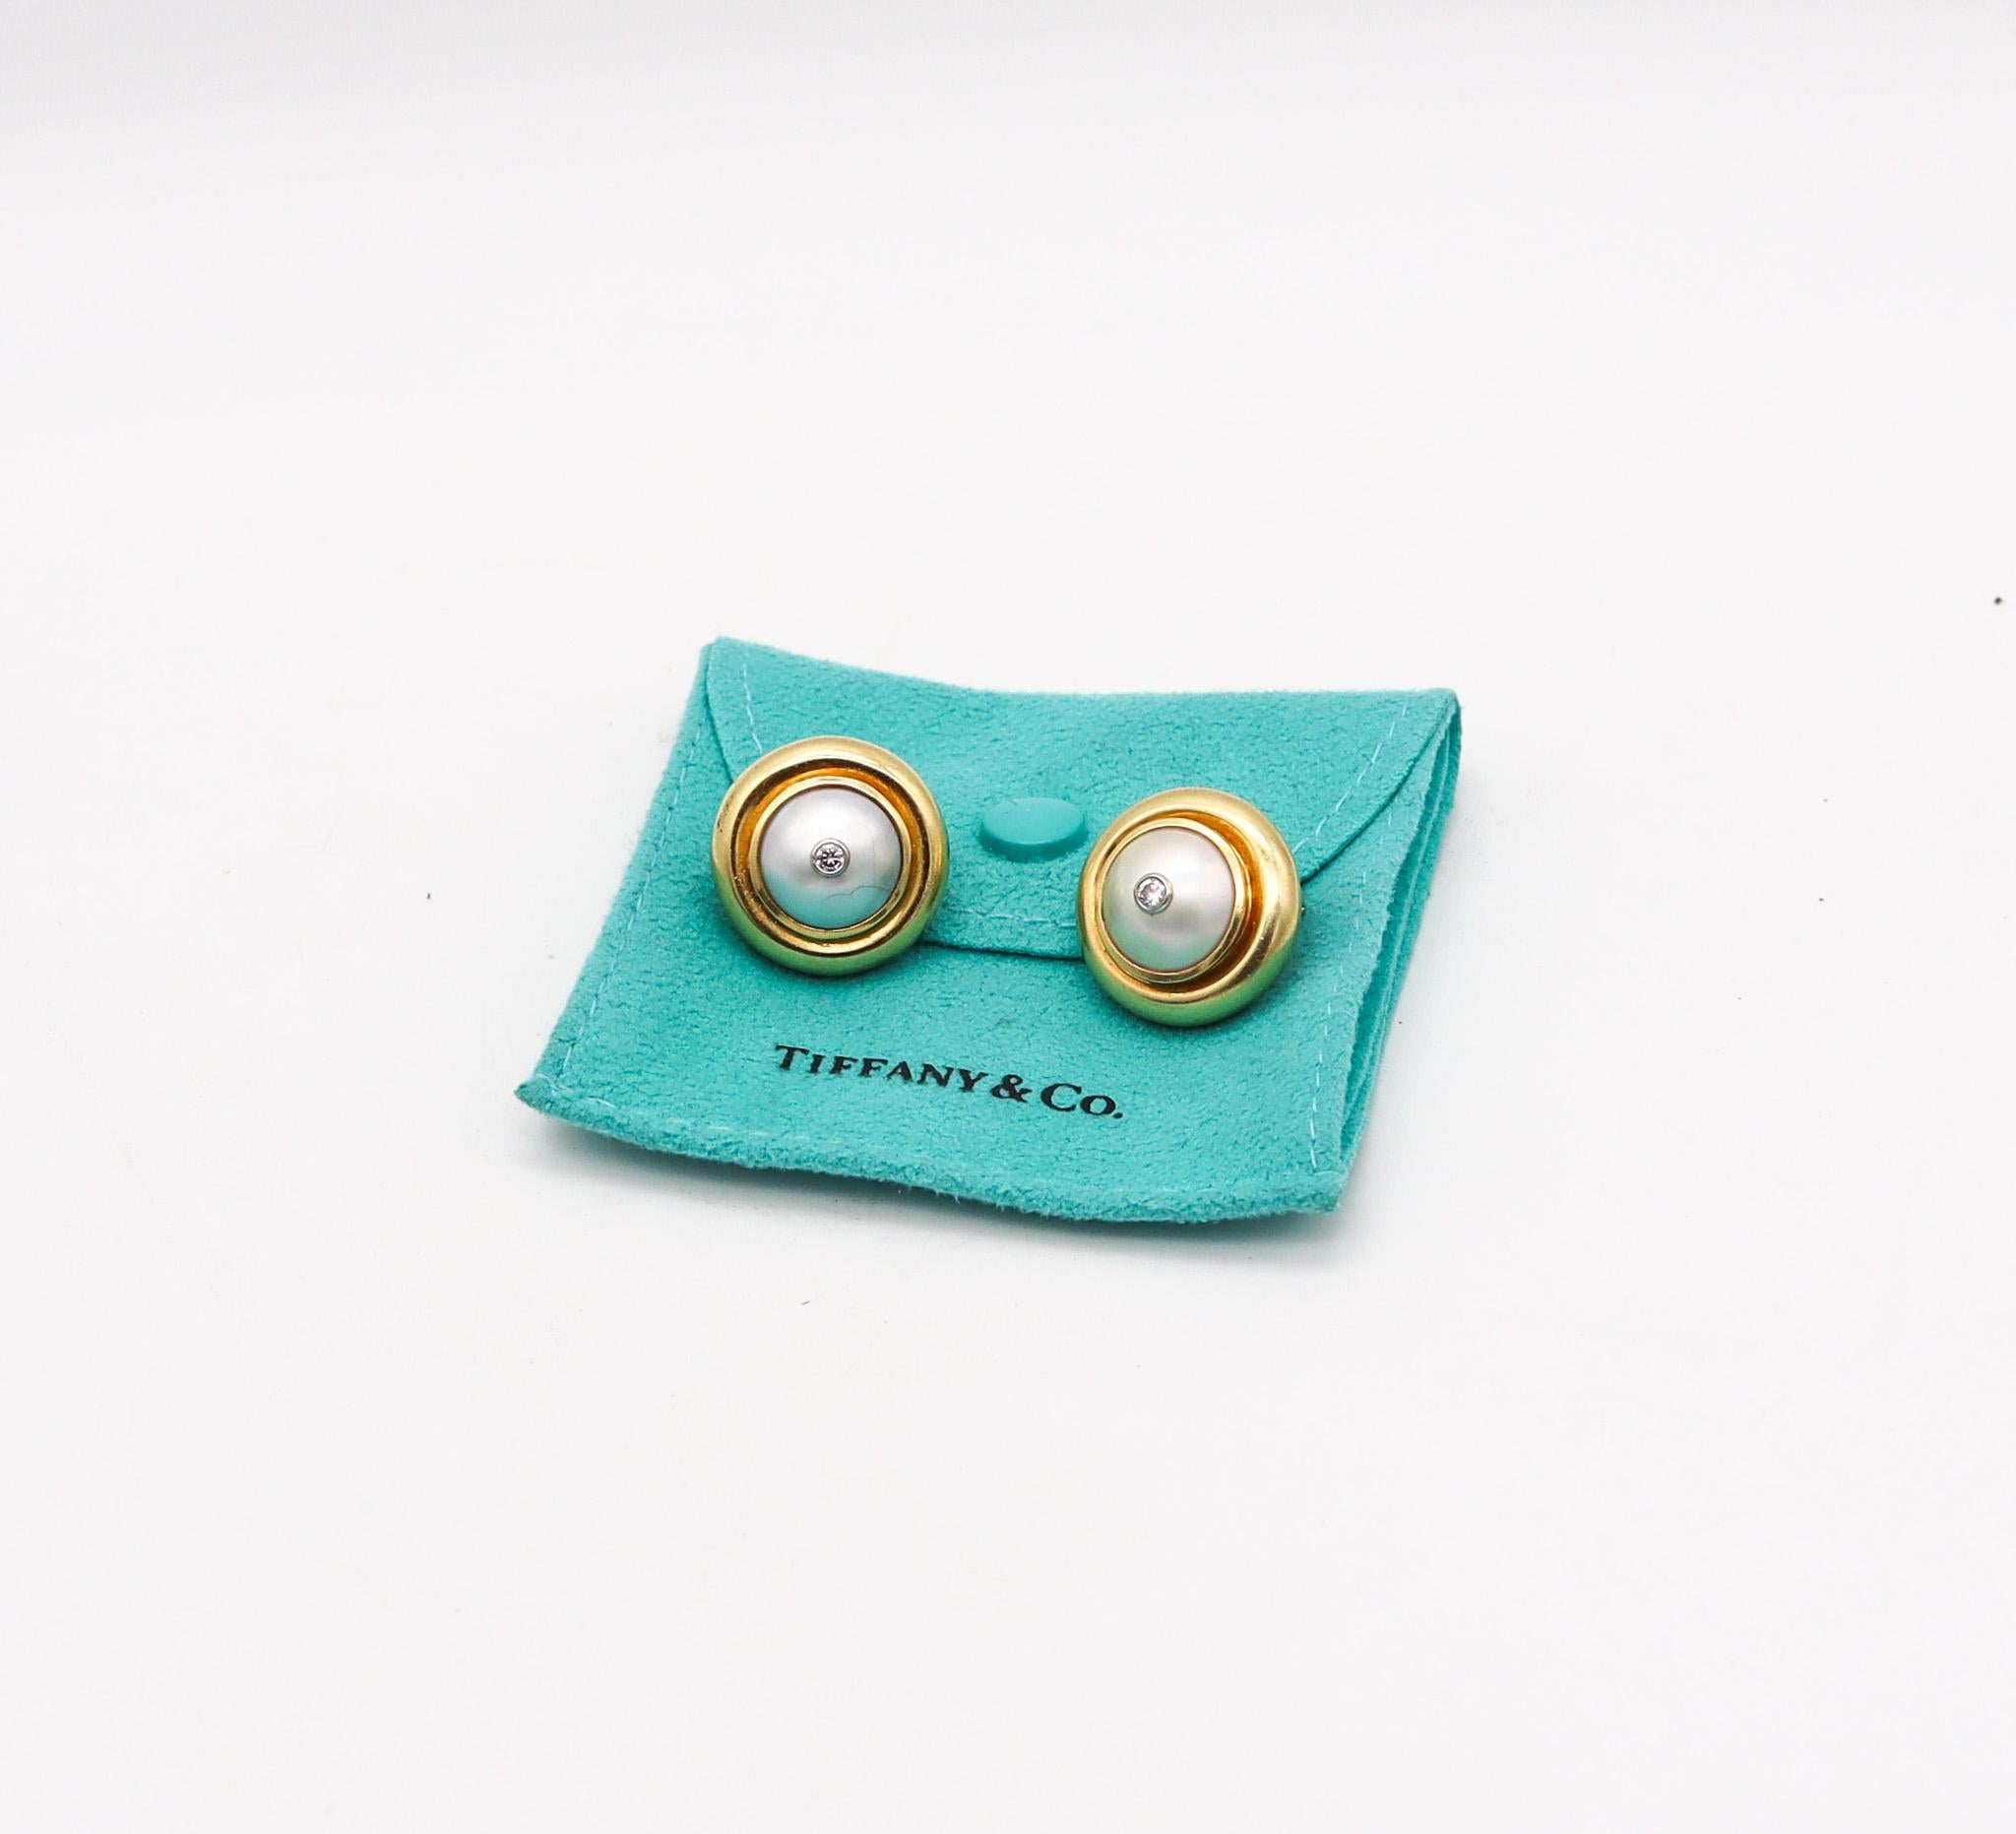 Boucles d'oreilles conçues par Paloma Picasso pour Tiffany & Co. 

Magnifique paire de clips d'oreilles, créée à New York par l'emblématique Paloma Picasso pour les studios Tiffany en 1981. Ces boucles d'oreilles sont très rares et faisaient partie